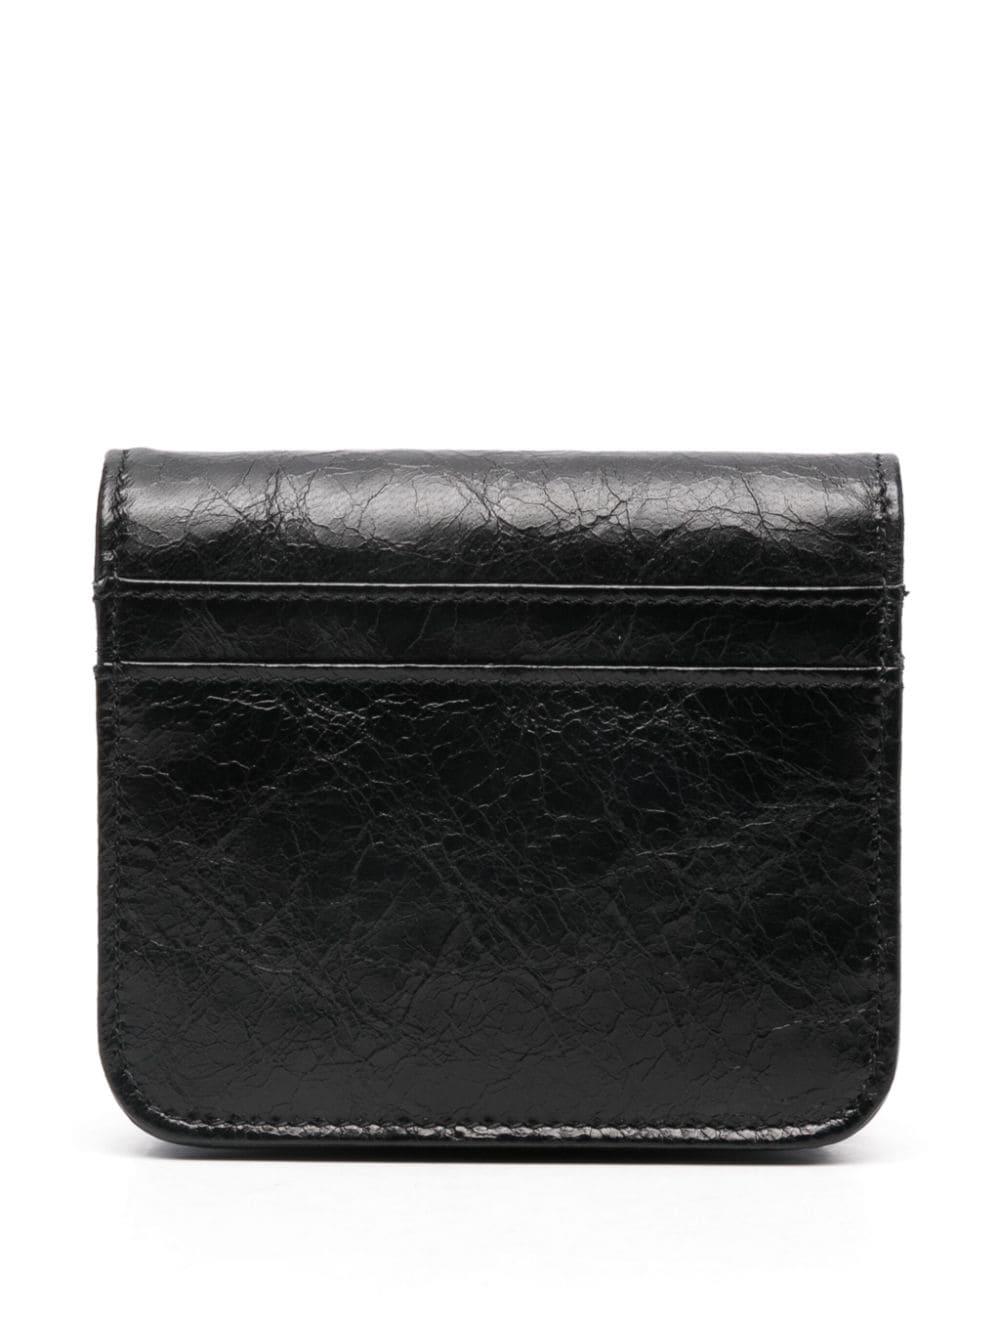 Balenciaga logo-plaque leather wallet - Black